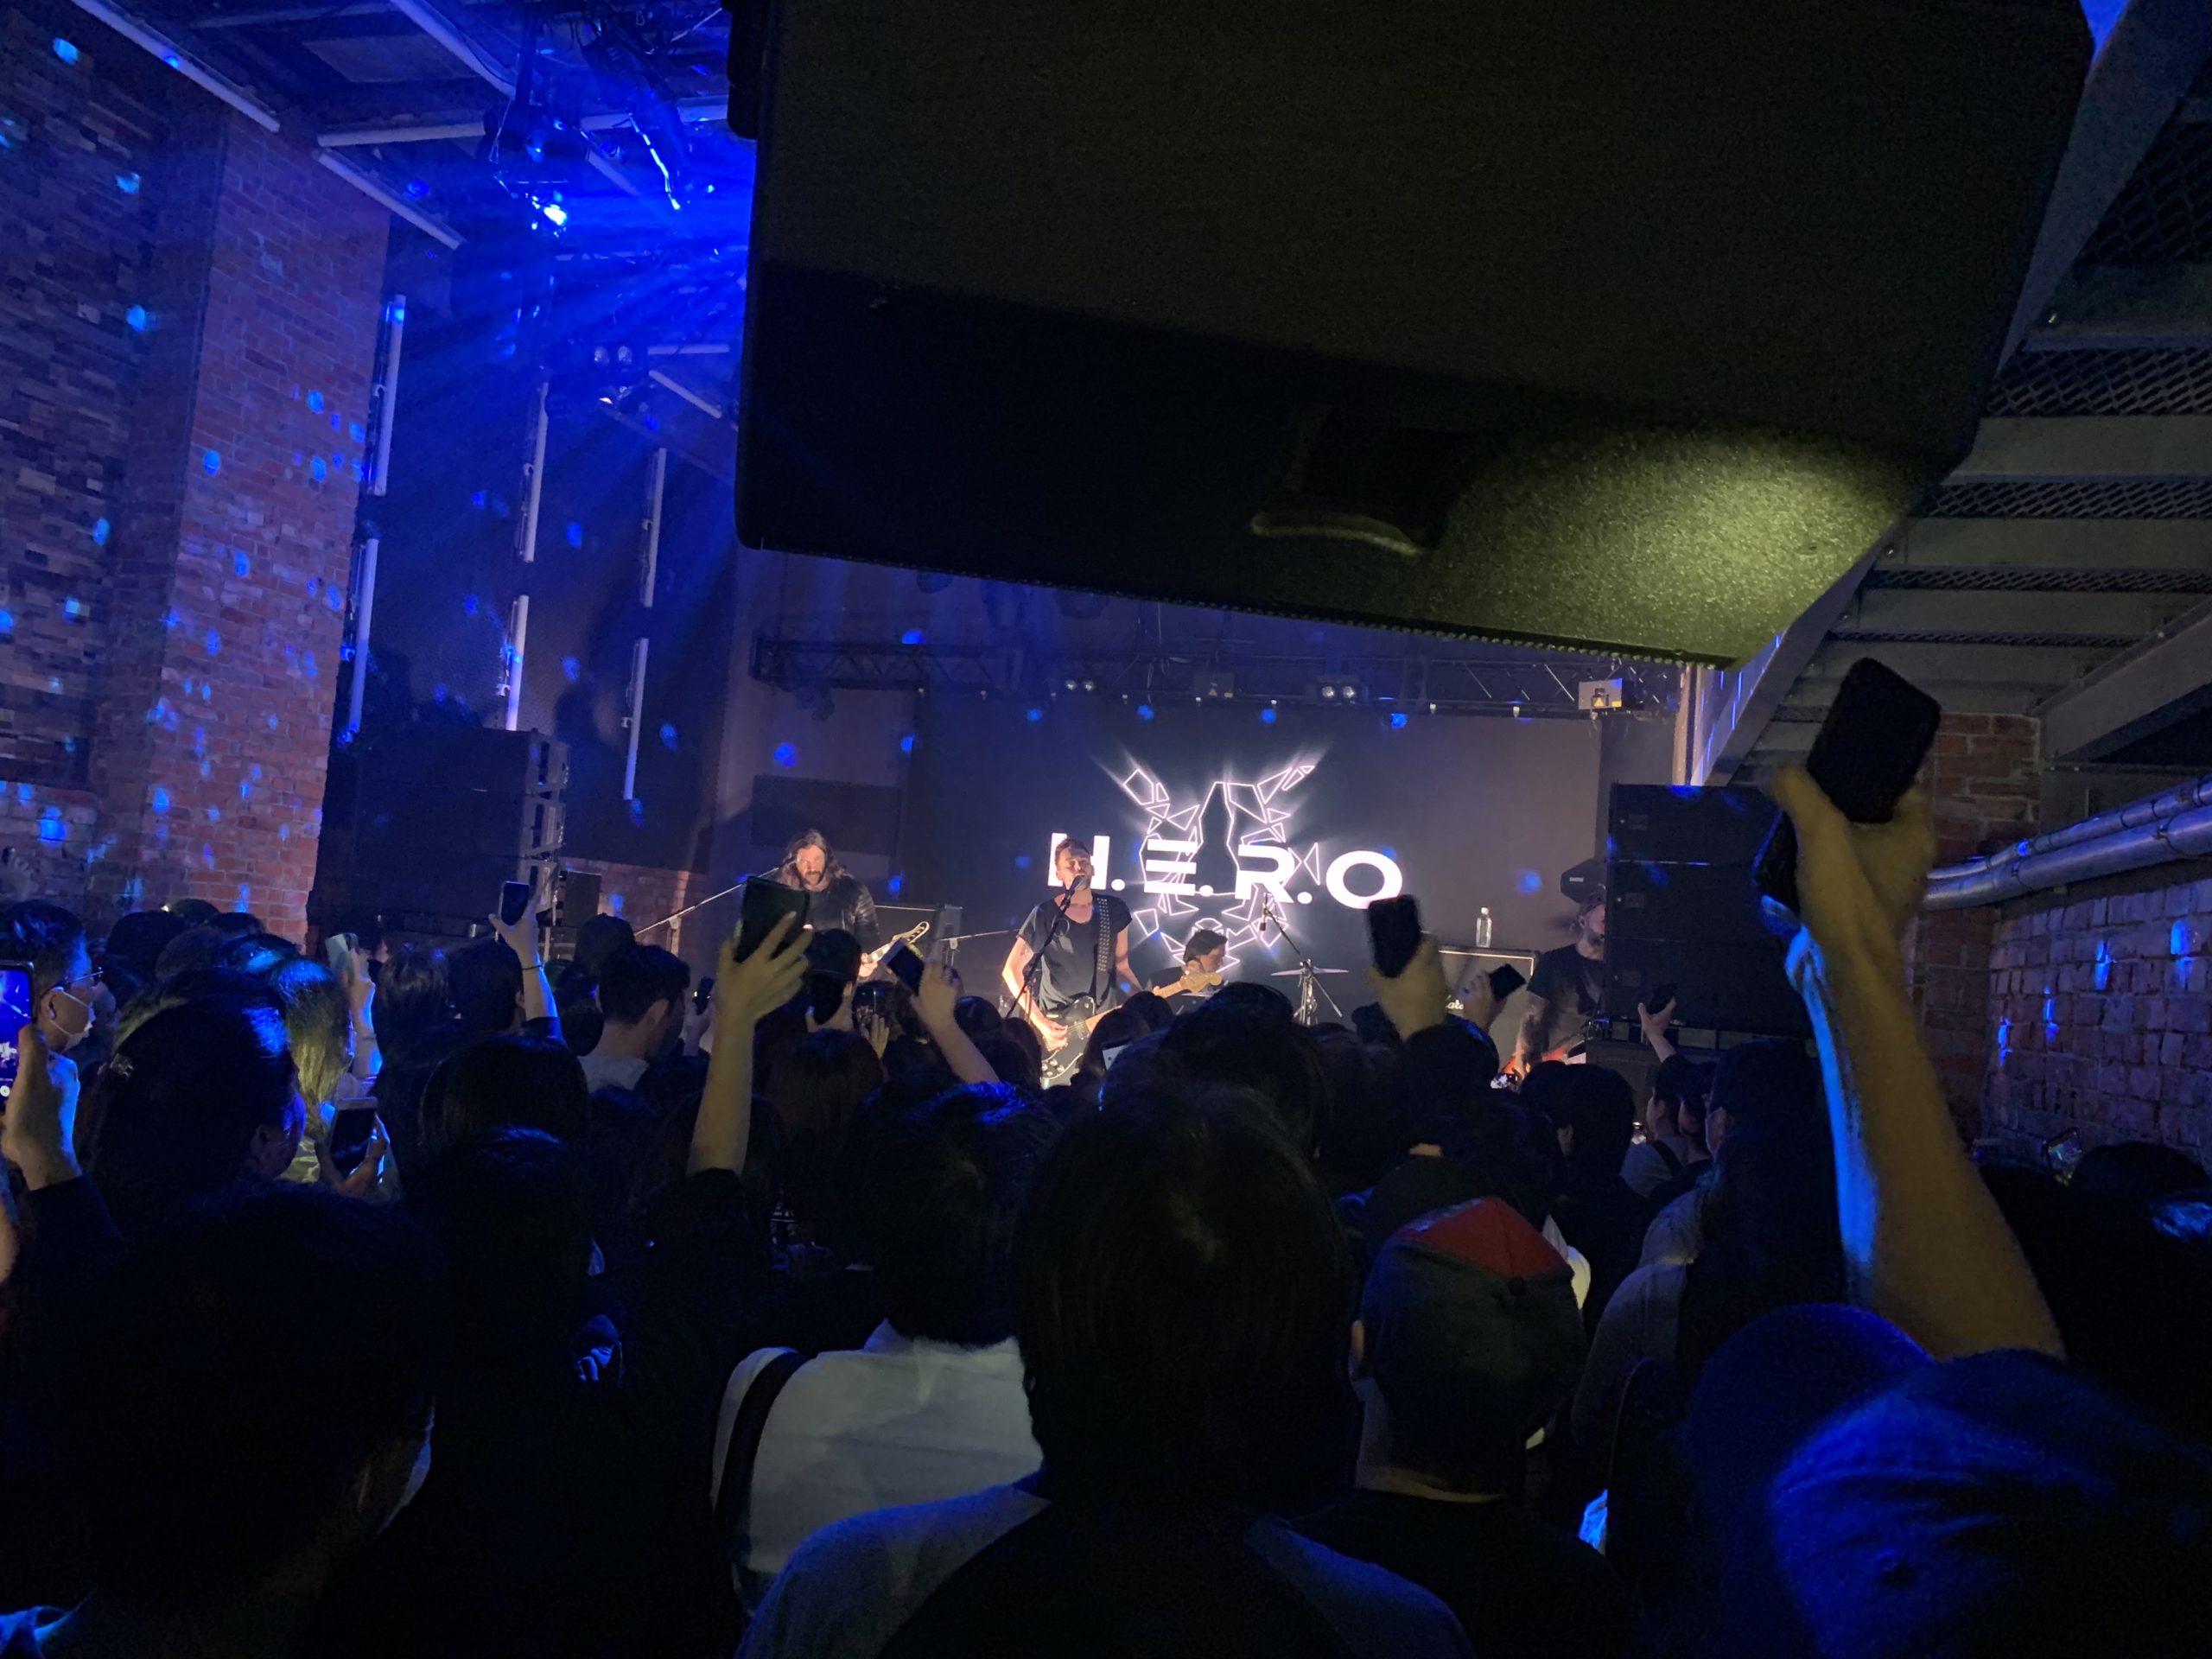 東京は代官山のライブハウスSPACE ODDで、デンマーク出身のロックバンドH.E.R.O.の単独来日公演を観てきた